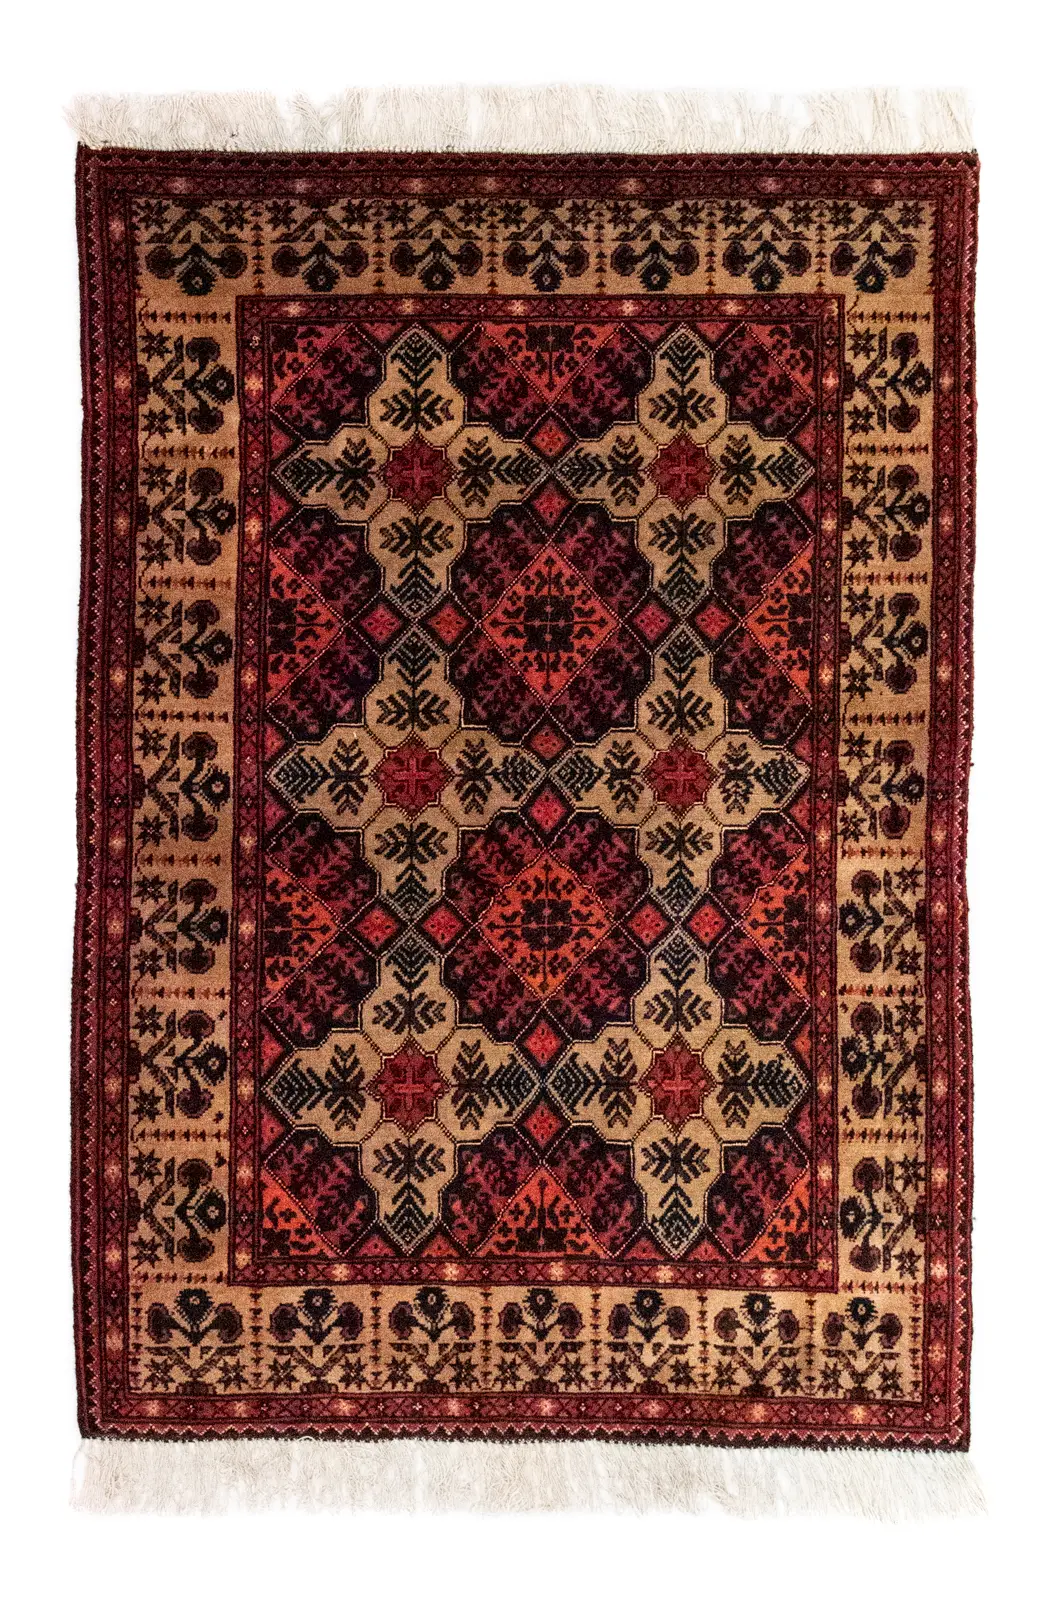 Afghan Teppich - 144 x 98 cm - braun